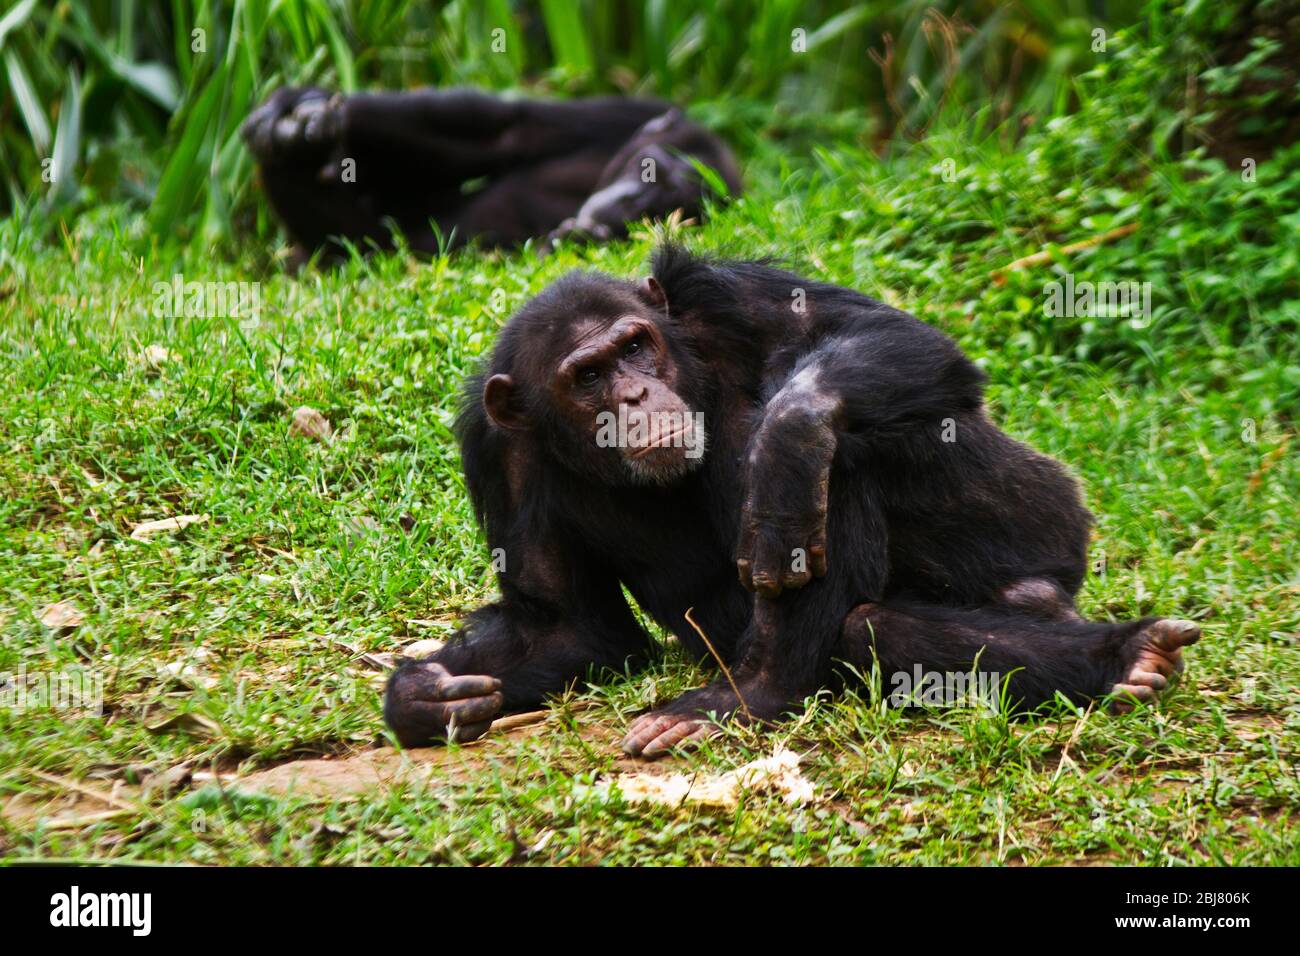 Un macho maduro Chimpanzee se relaja durante una siesta durante el calor del día. Los hombres siempre están alerta y listos para proteger a las mujeres y a los jóvenes Foto de stock